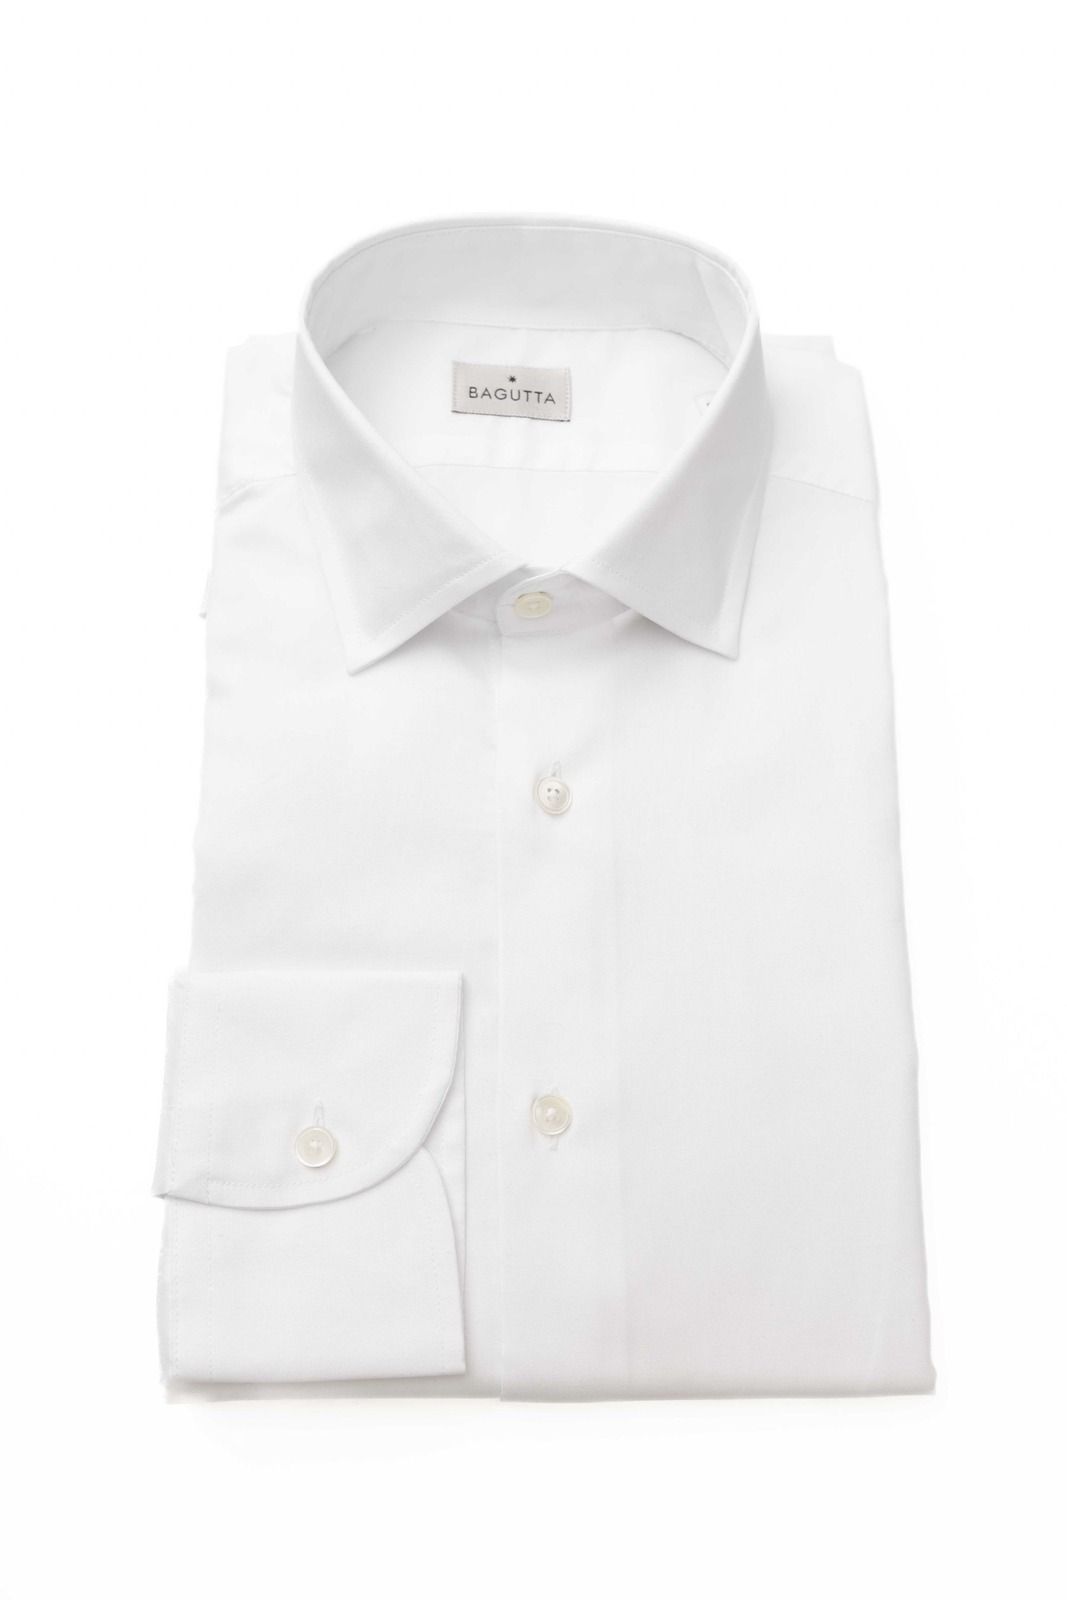 Košile Bagutta 12509 LEO EBL Barva: bílá, Velikost: 40